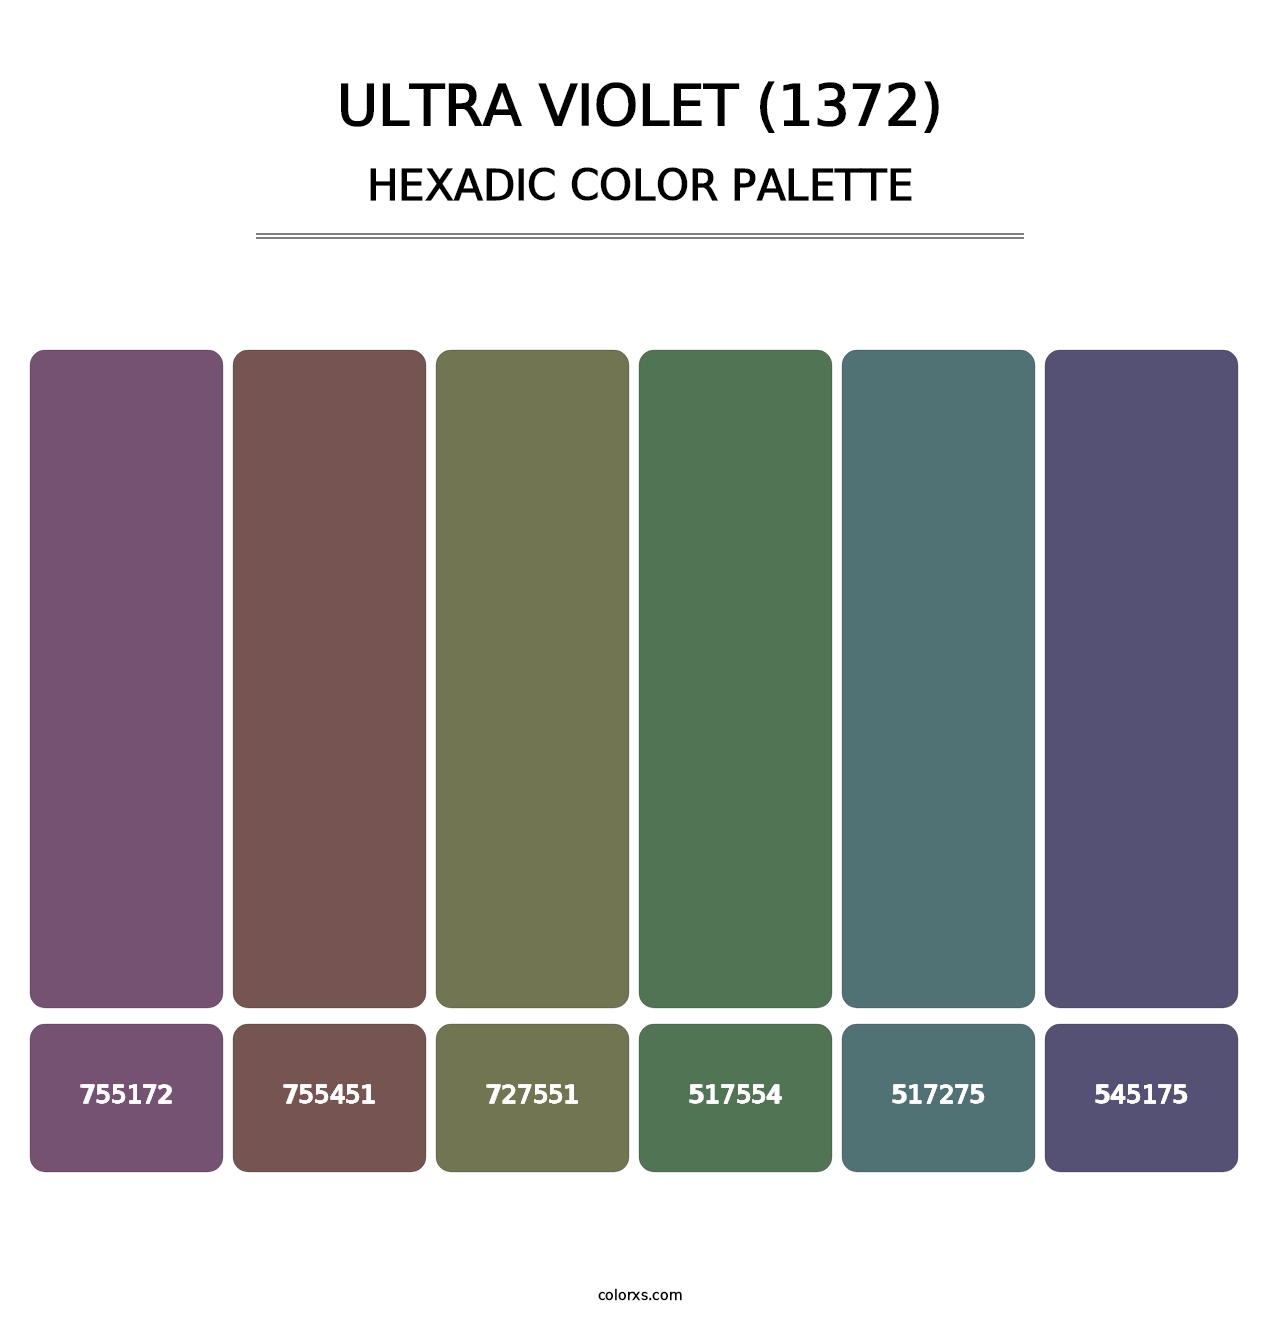 Ultra Violet (1372) - Hexadic Color Palette